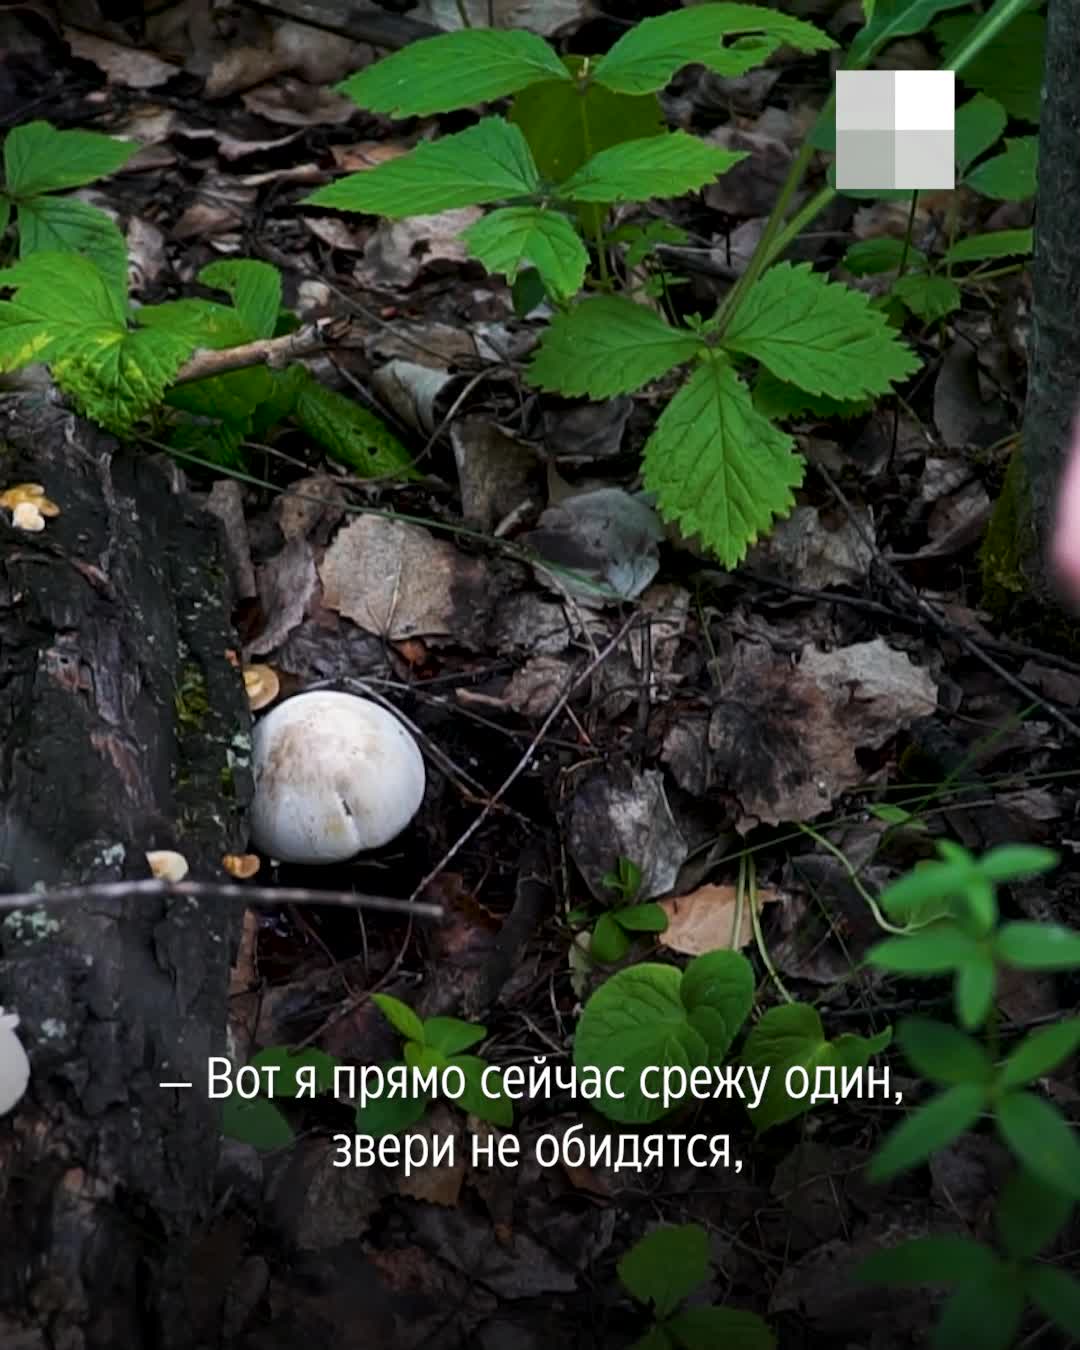 Грузди размером с ладонь и шампиньоны-гиганты: репортаж с выезда калининградцев за грибами